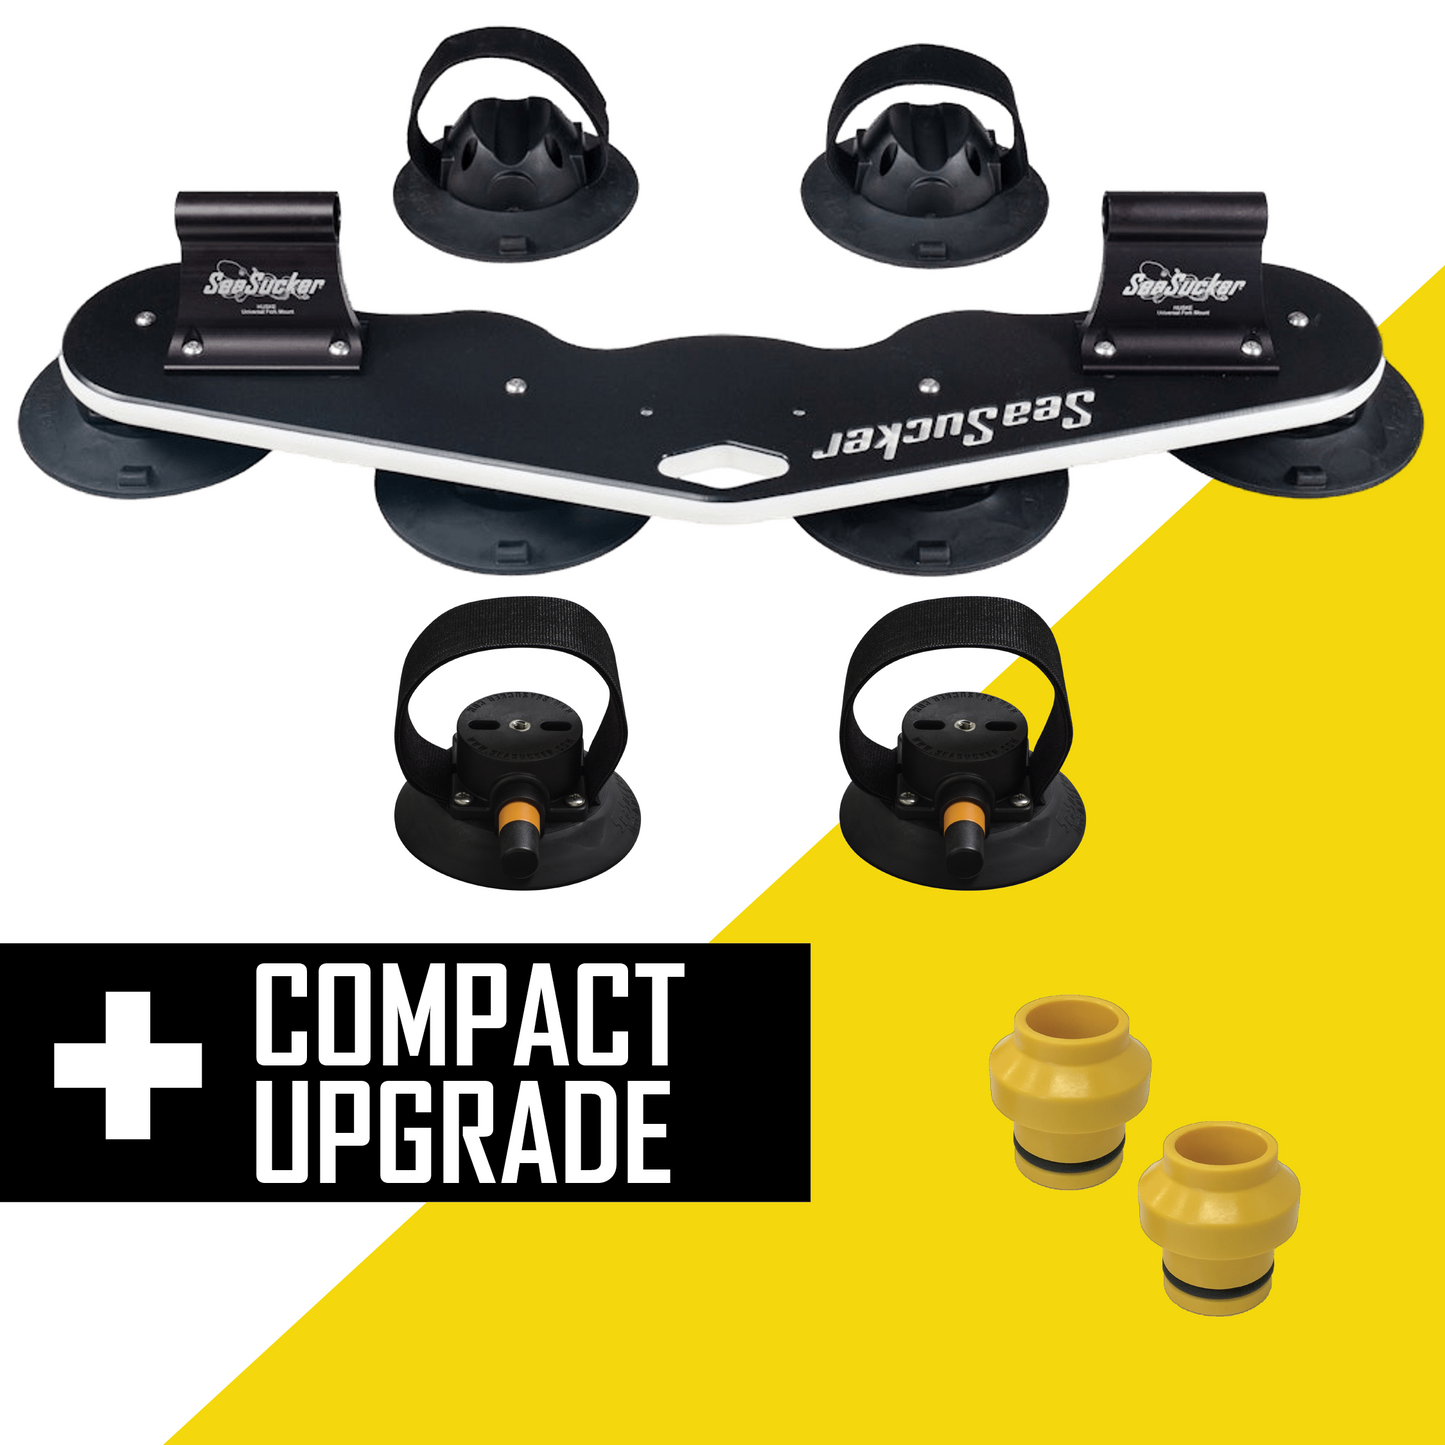 Compact Deluxe Kit – Für 2 Fährrader